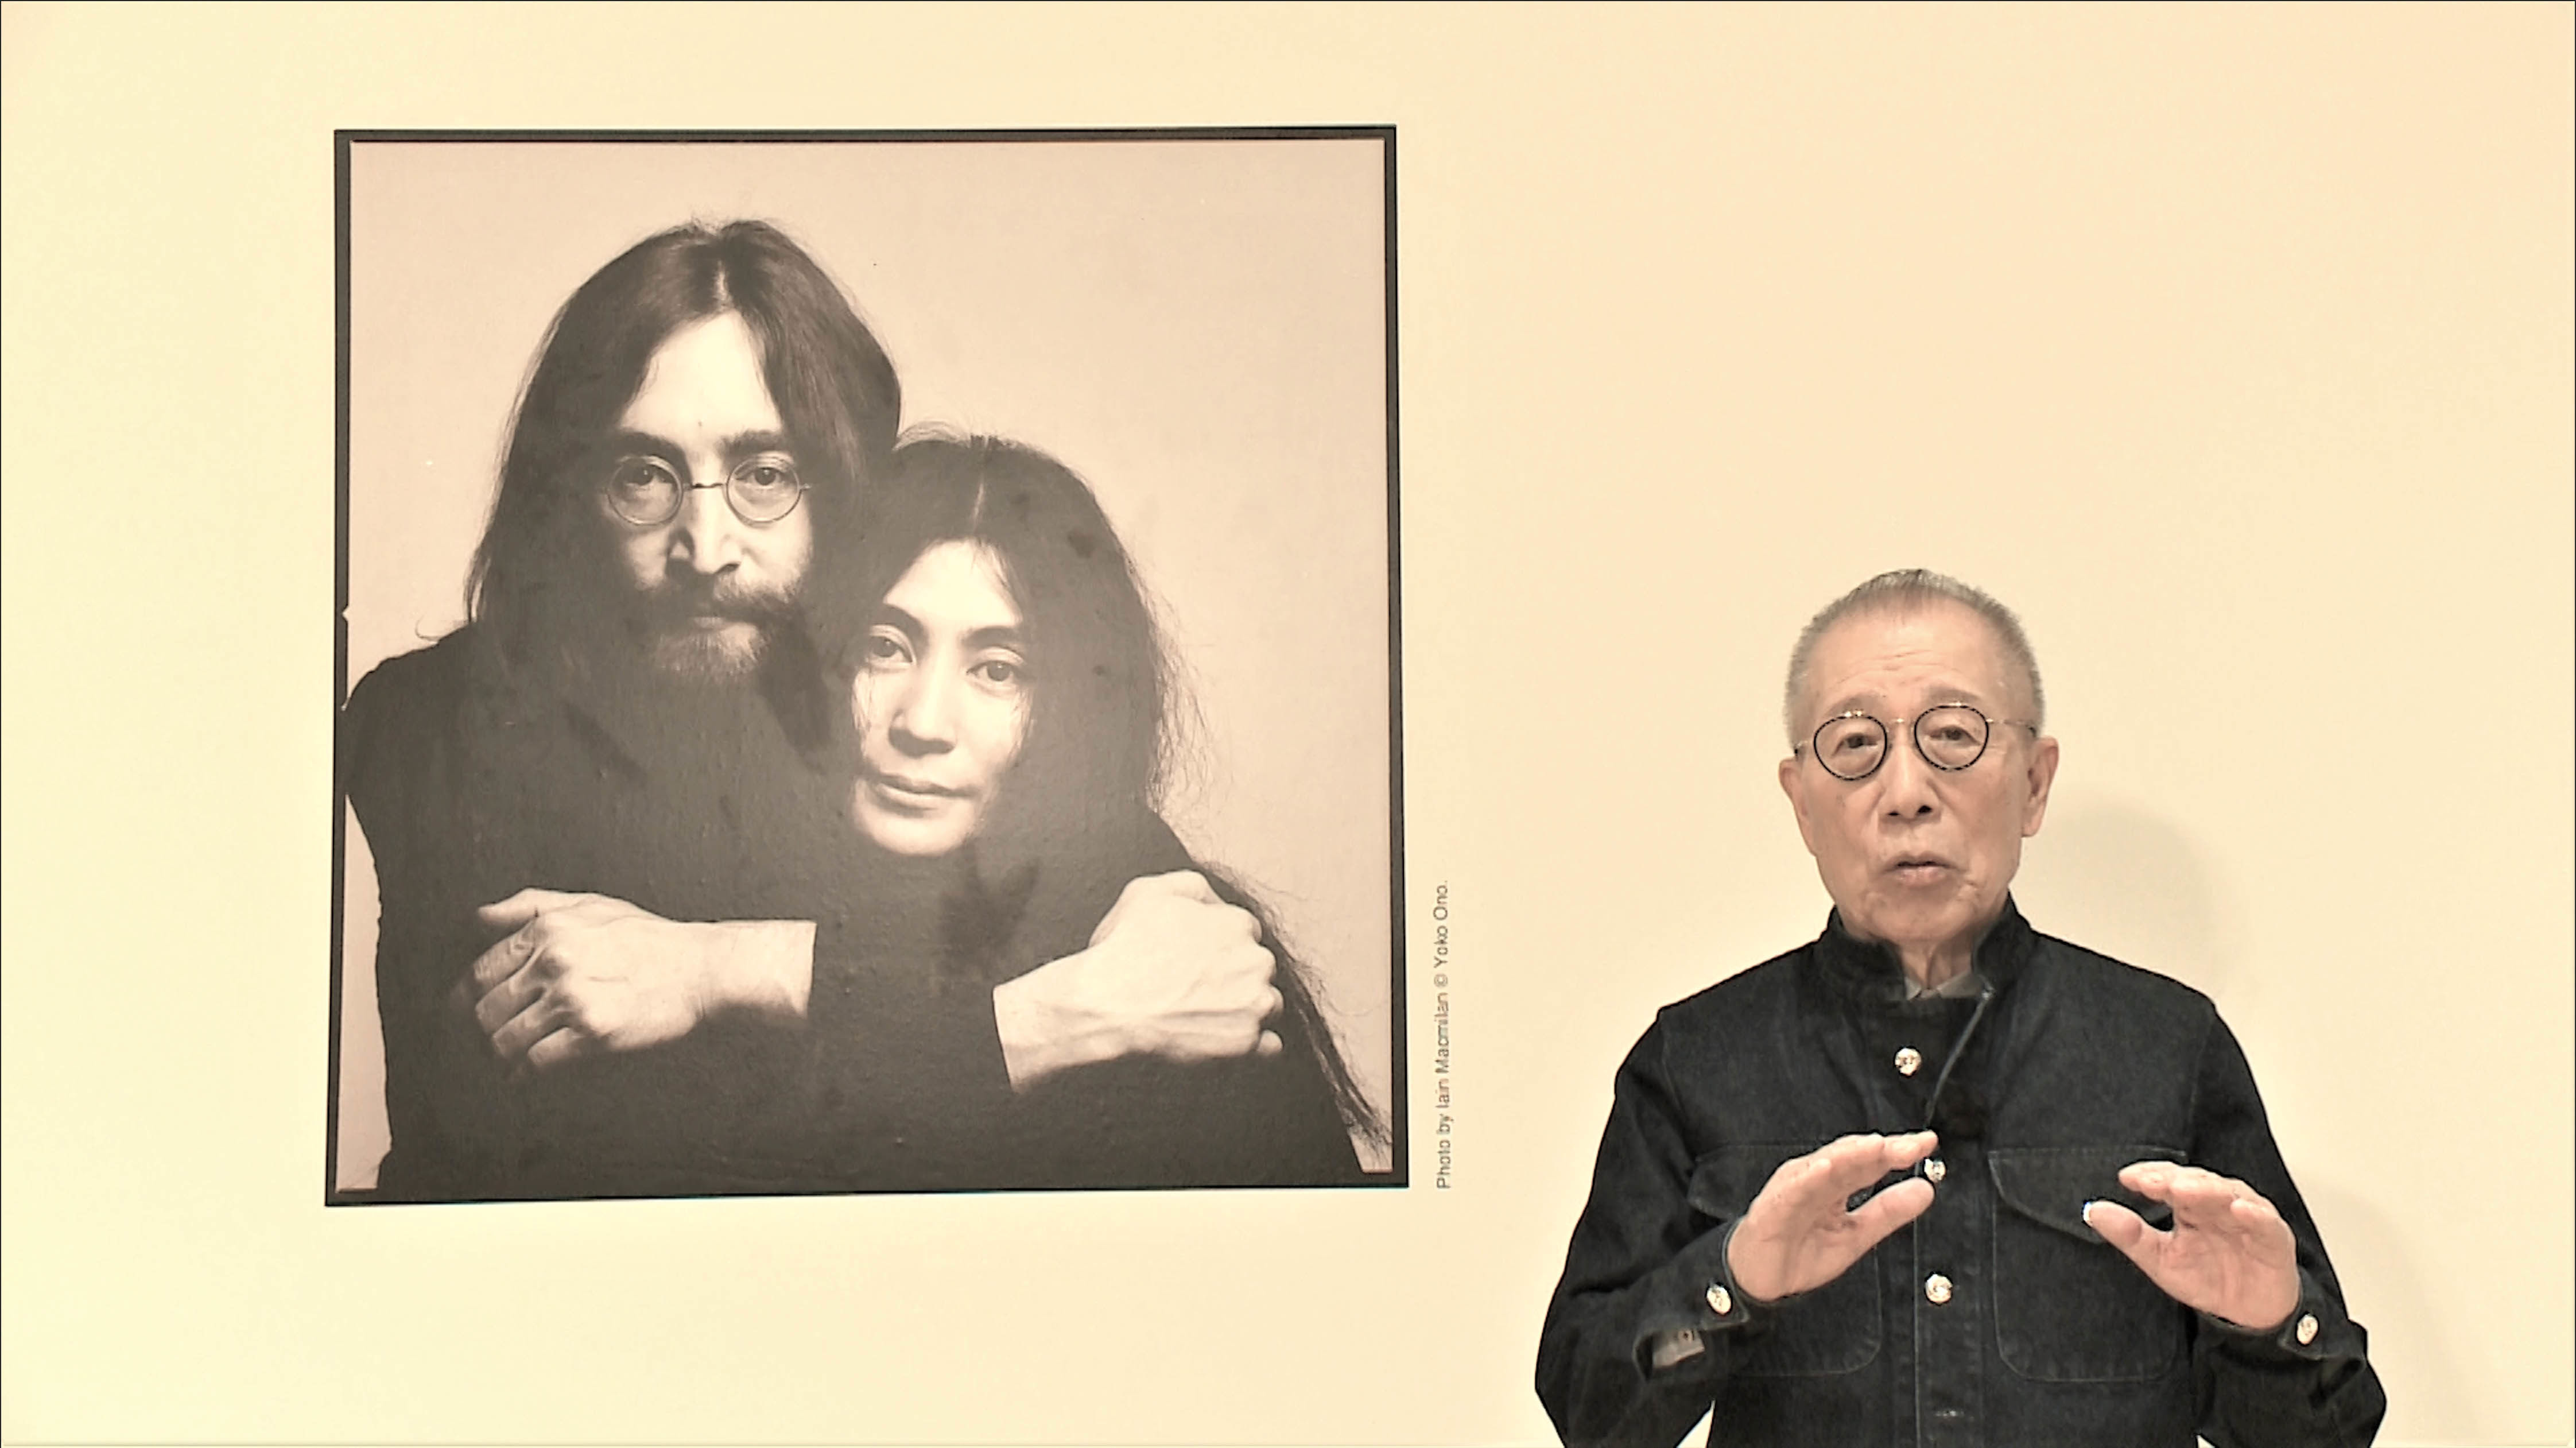 10月9日放送 BS朝日「ベストヒットUSA」　
生誕80周年！ジョン・レノン特集！
展覧会「DOUBLE FANTASY - John & Yoko」
招待券を5組10名様にプレゼント！